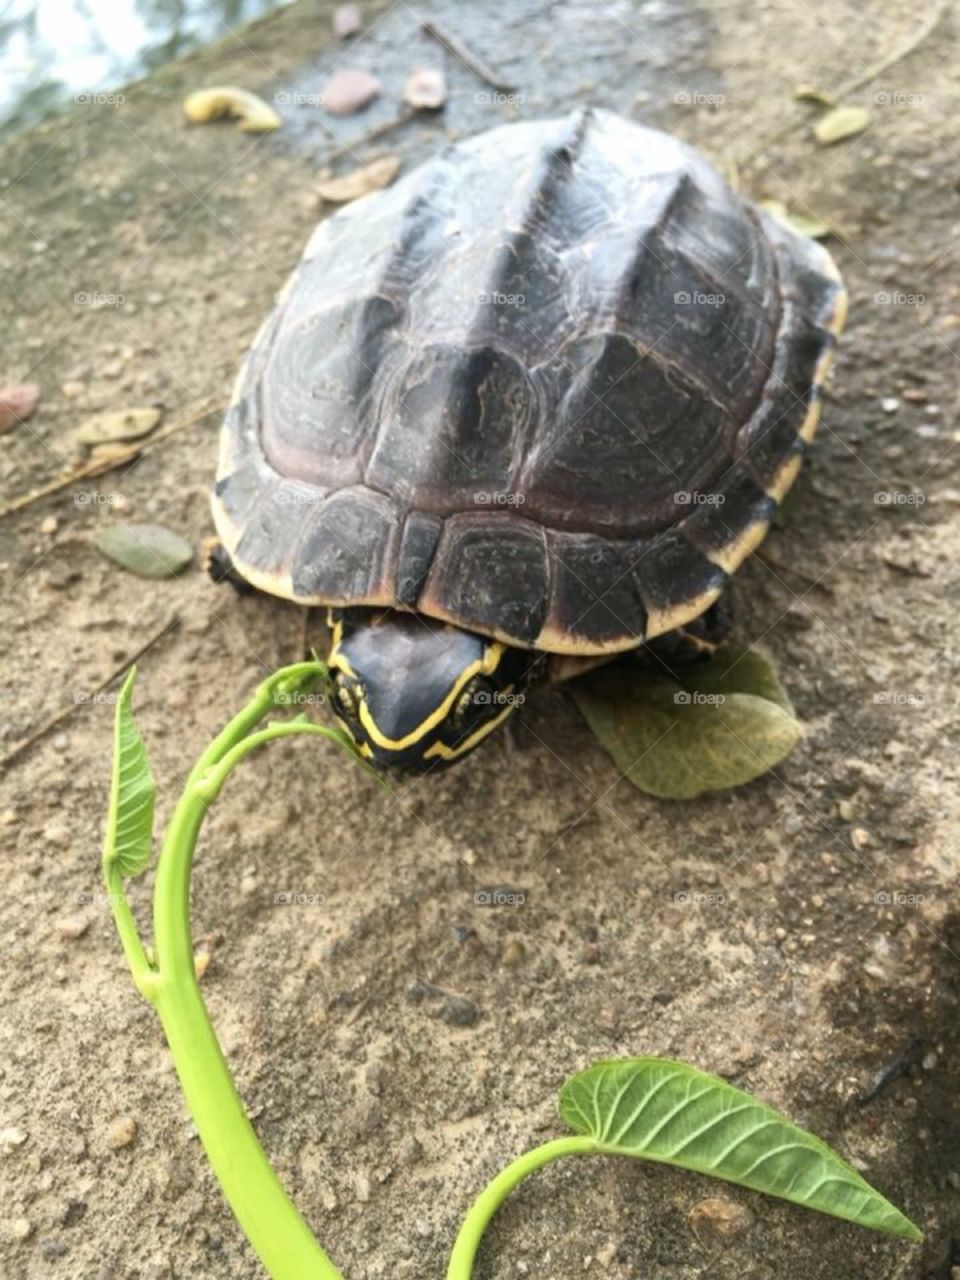 Feeding a turtle.